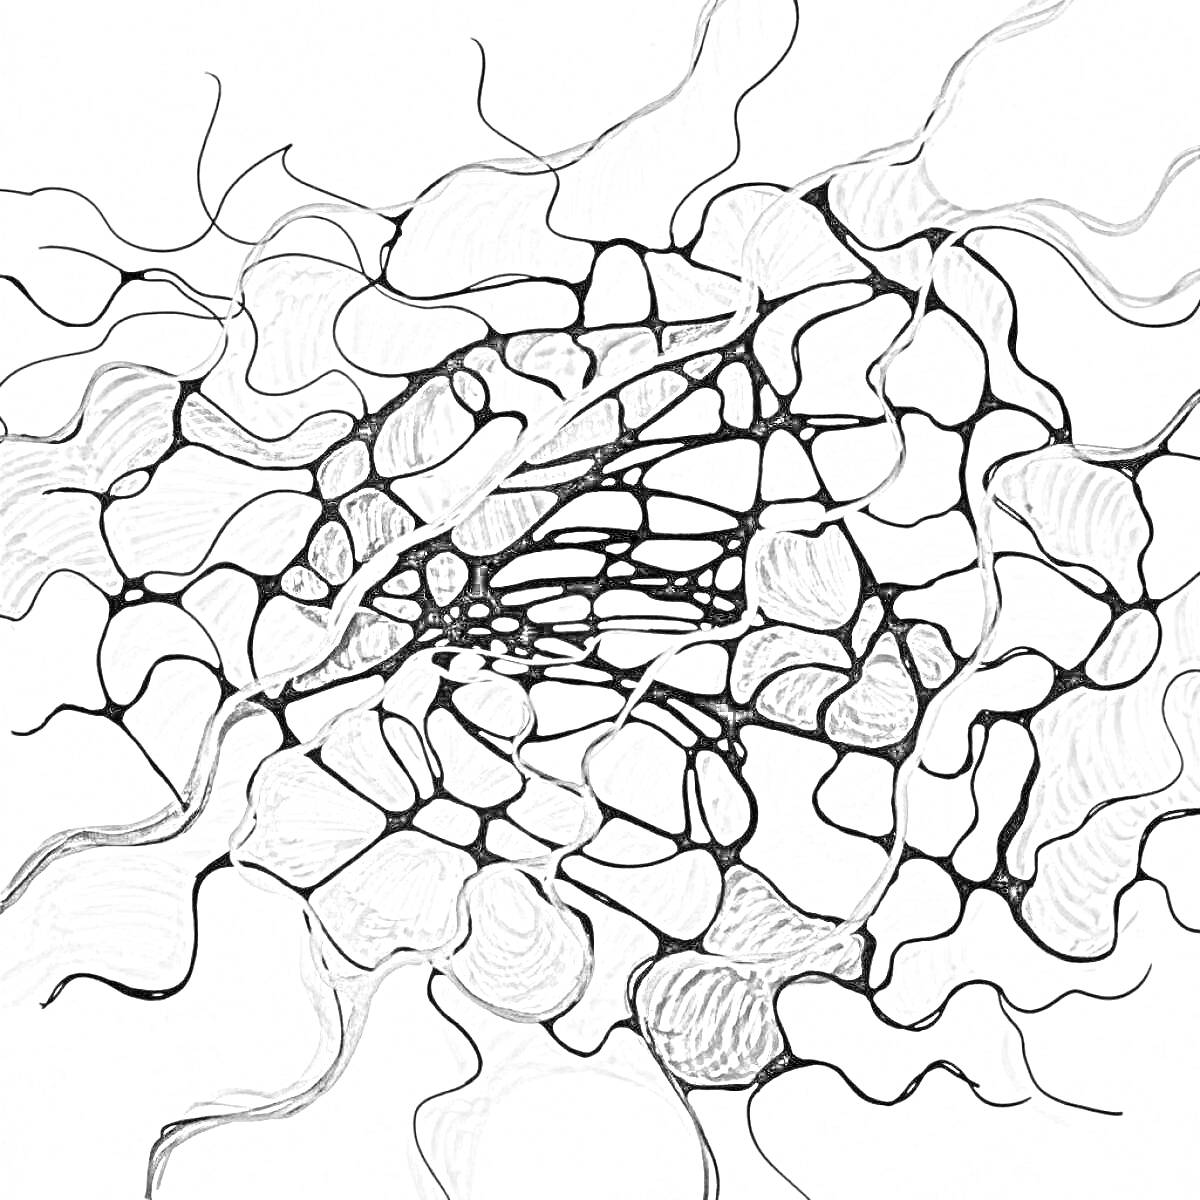 Узоры нейрографики с разноцветными абстрактными формами и линиями